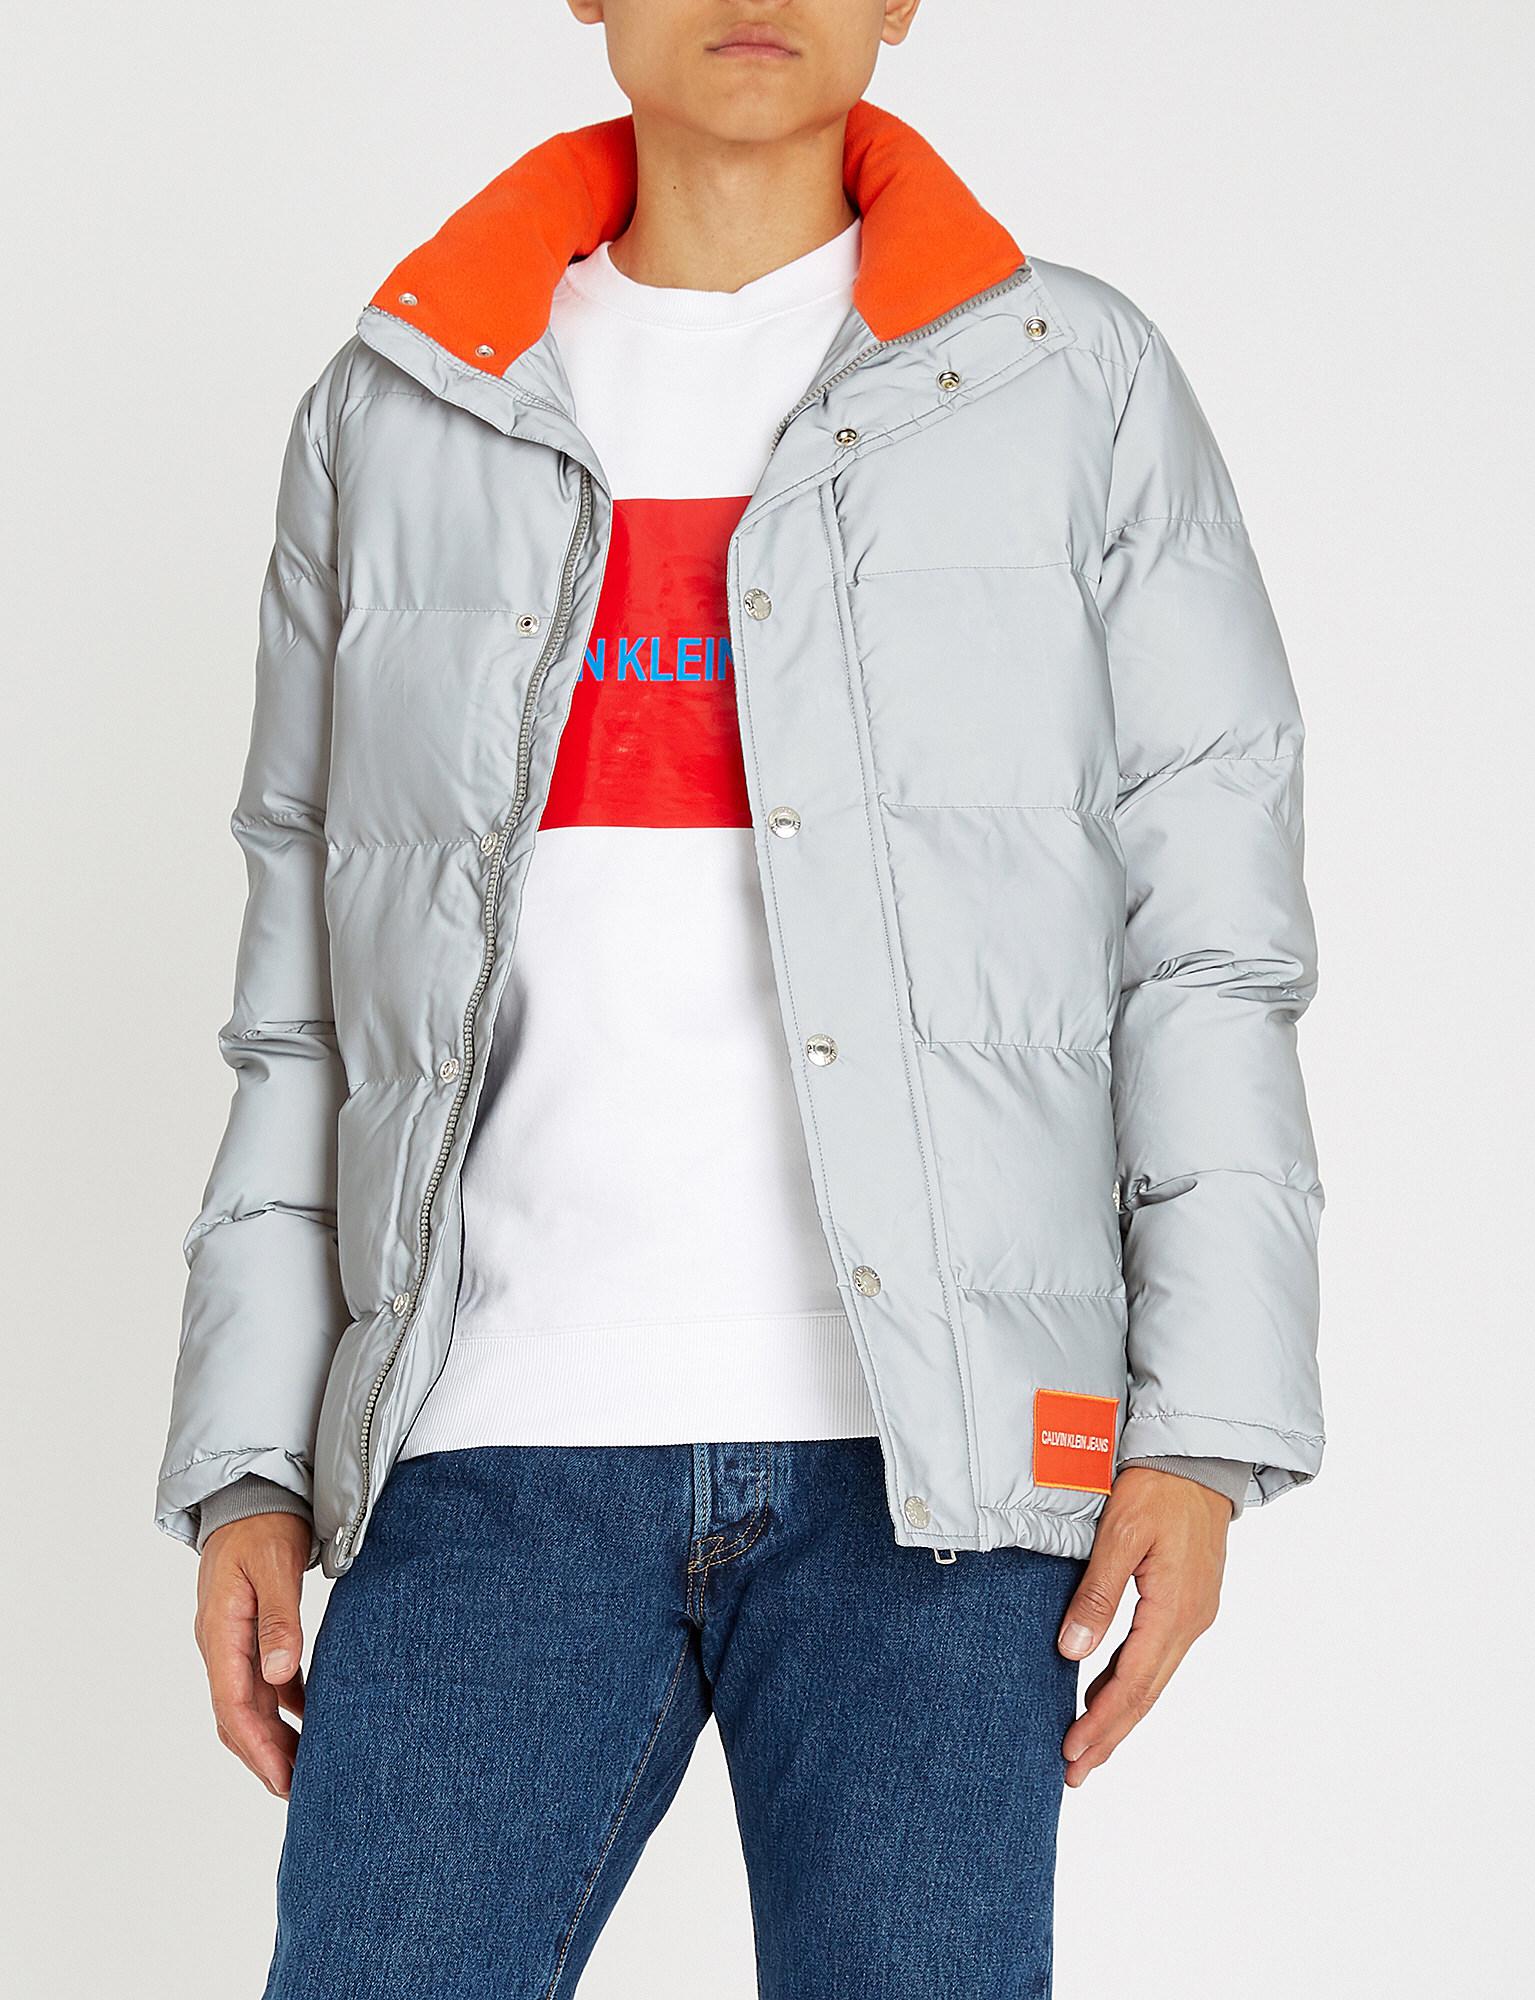 Calvin Klein Reflective Puffer Jacket Sale Online, SAVE 54%.